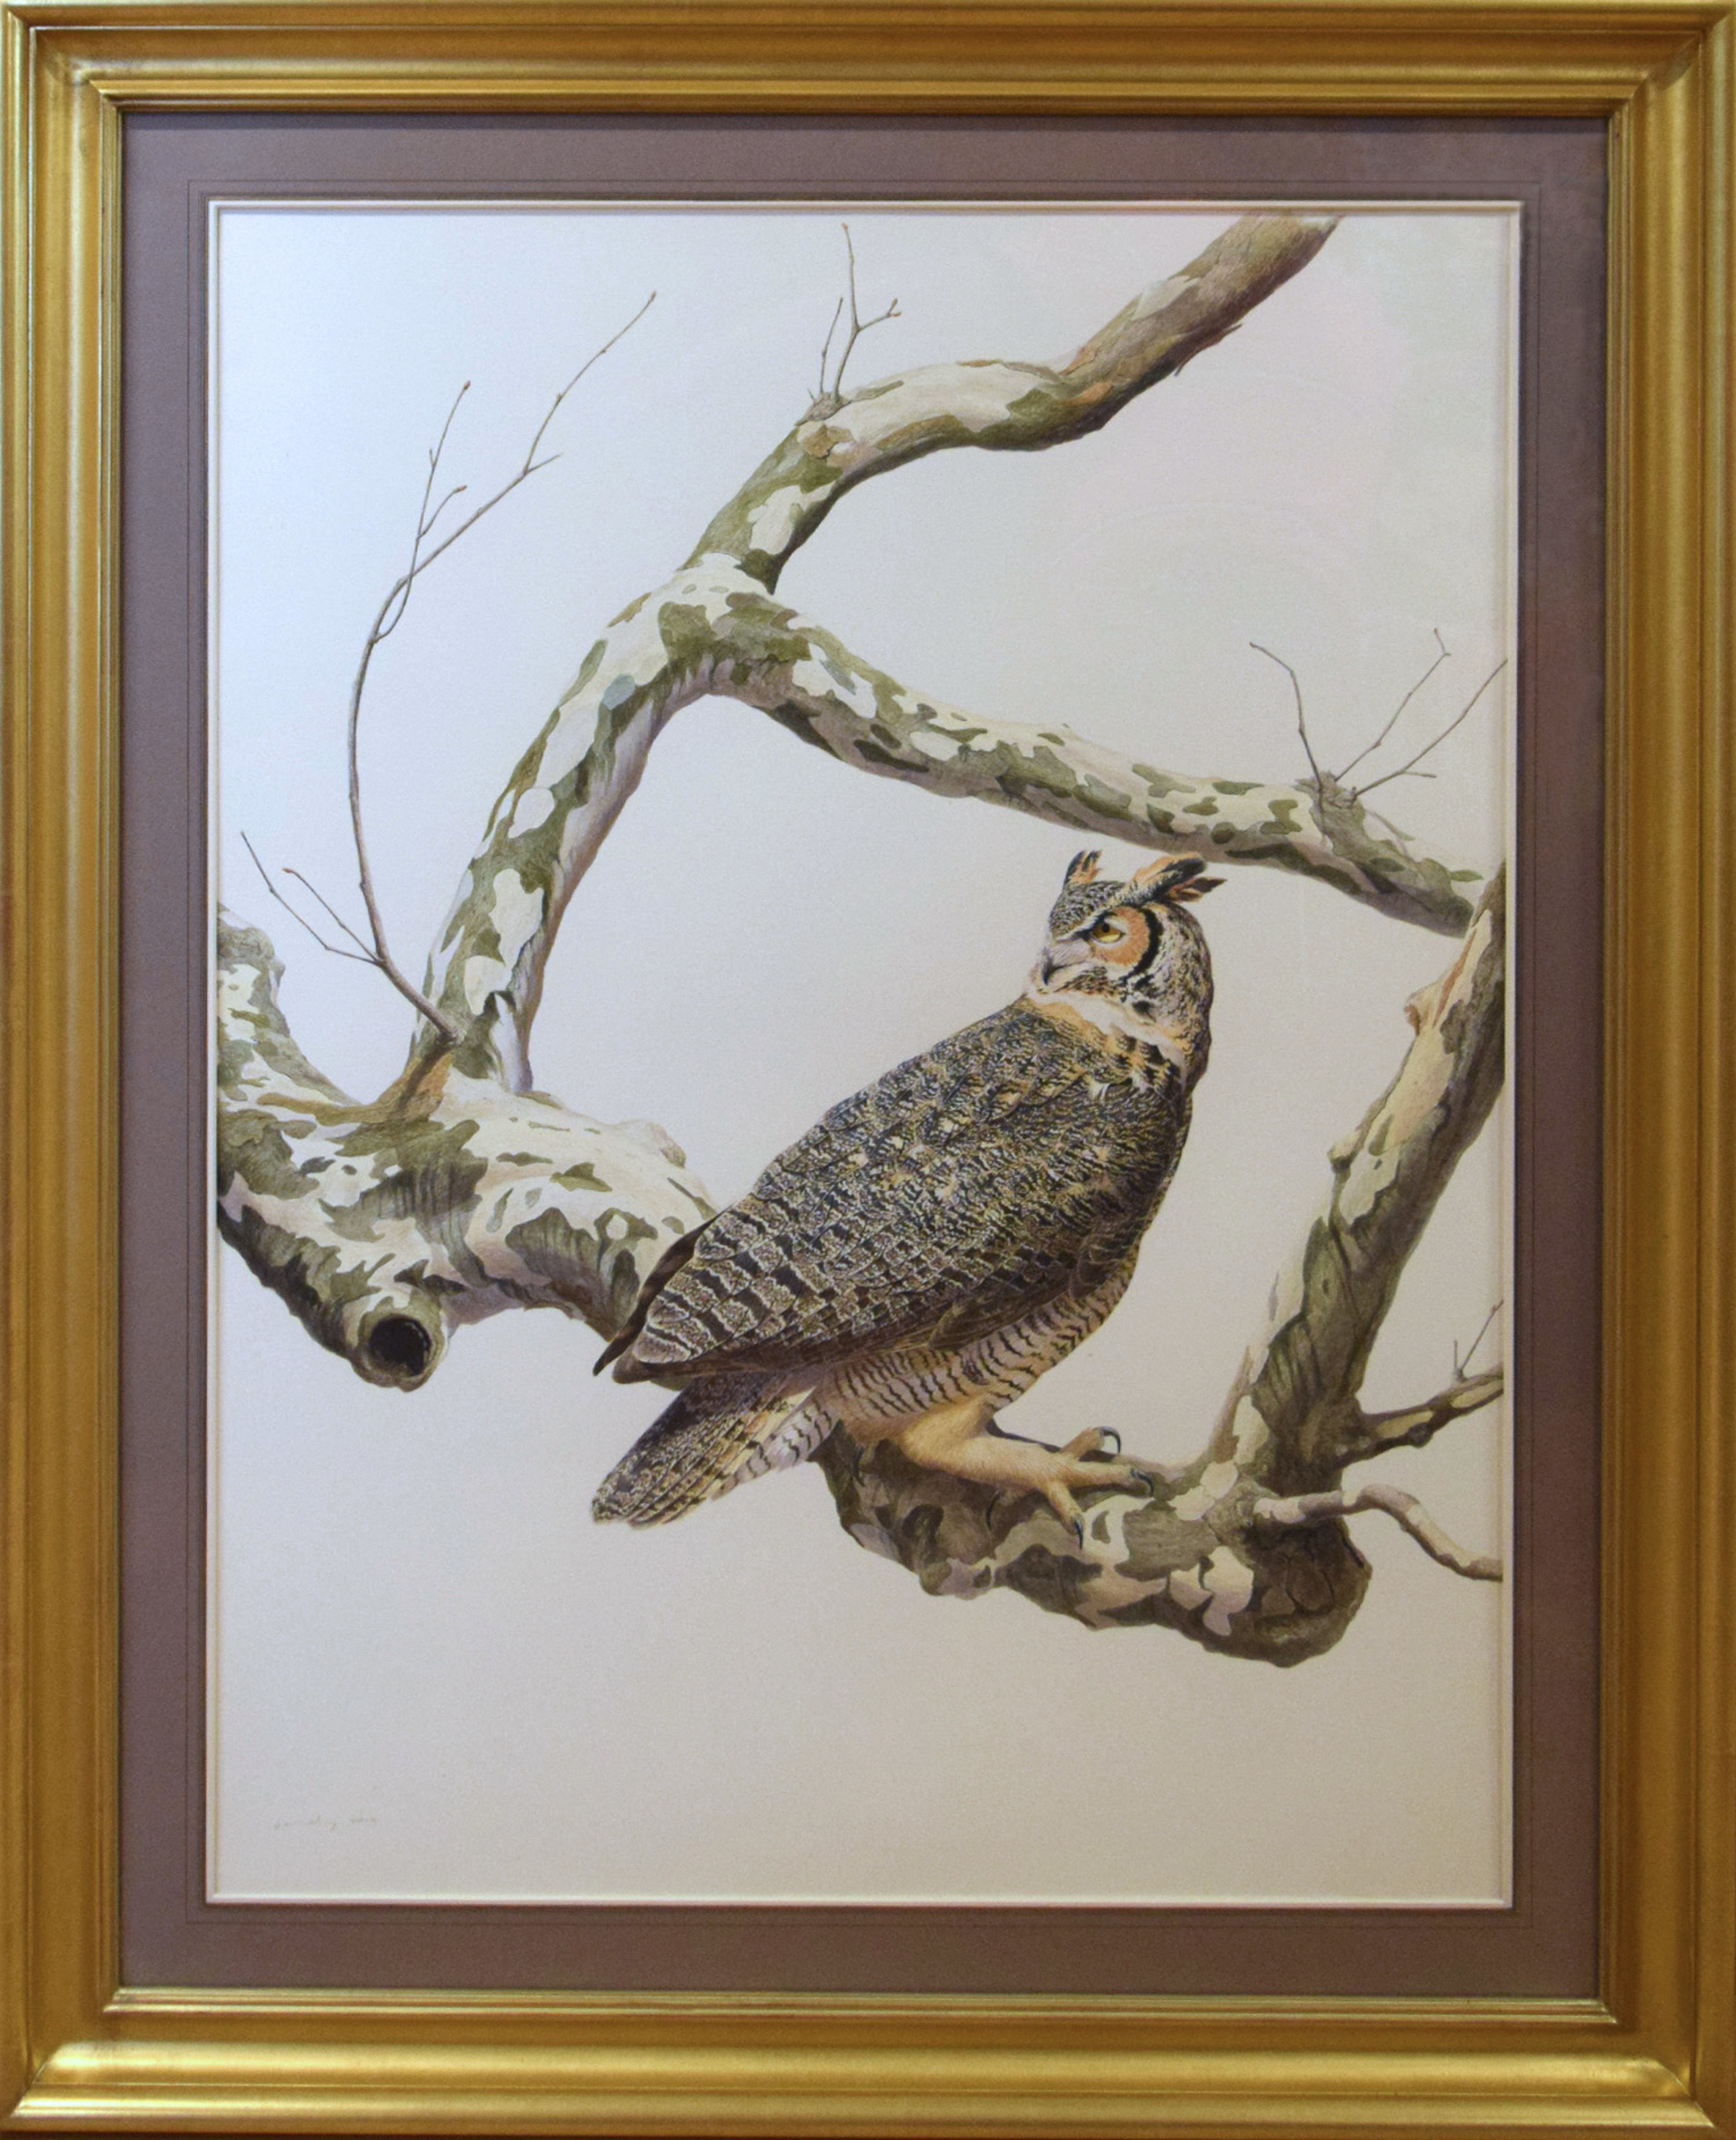 GREAT HORN OWL BY TONY HENNEBERG by Tony Hennenberg